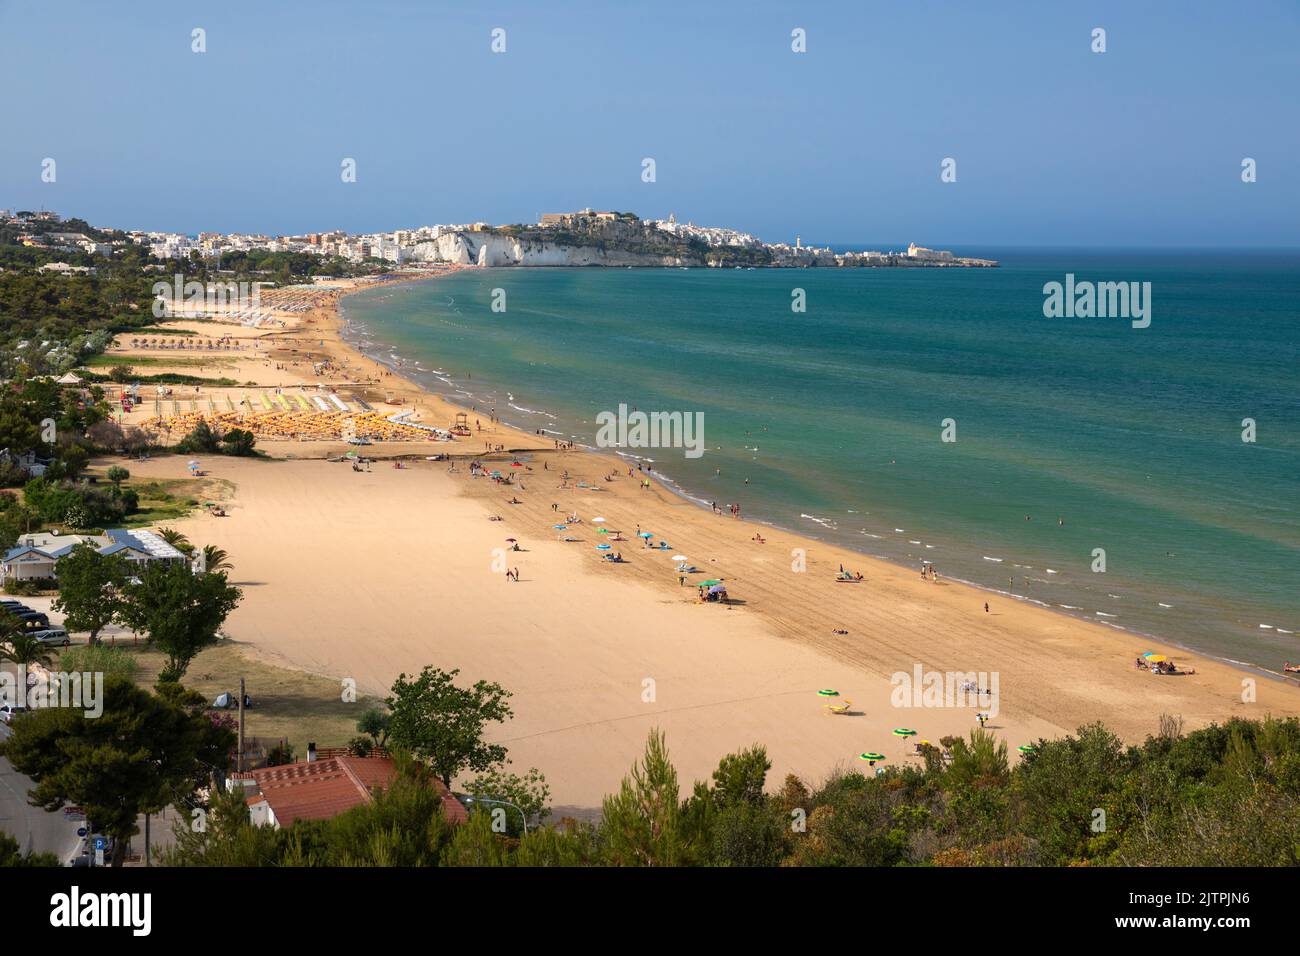 Vista lungo la spiaggia con il centro storico di Vieste in lontananza, Vieste, Puglia, Italia Foto Stock